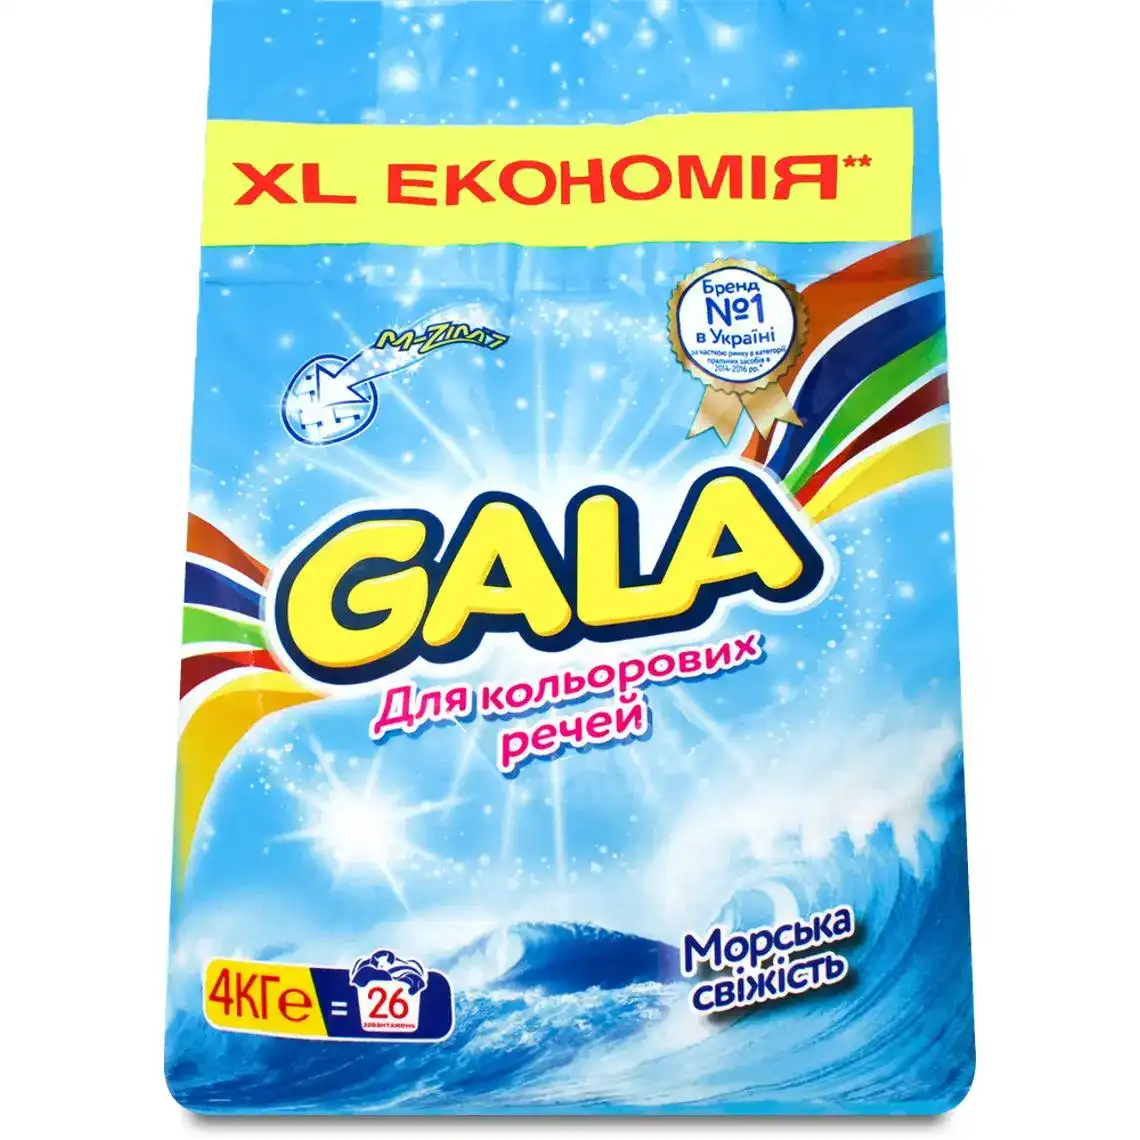 Порошок пральний для кольорових речей Морська свіжість Gala 4кг